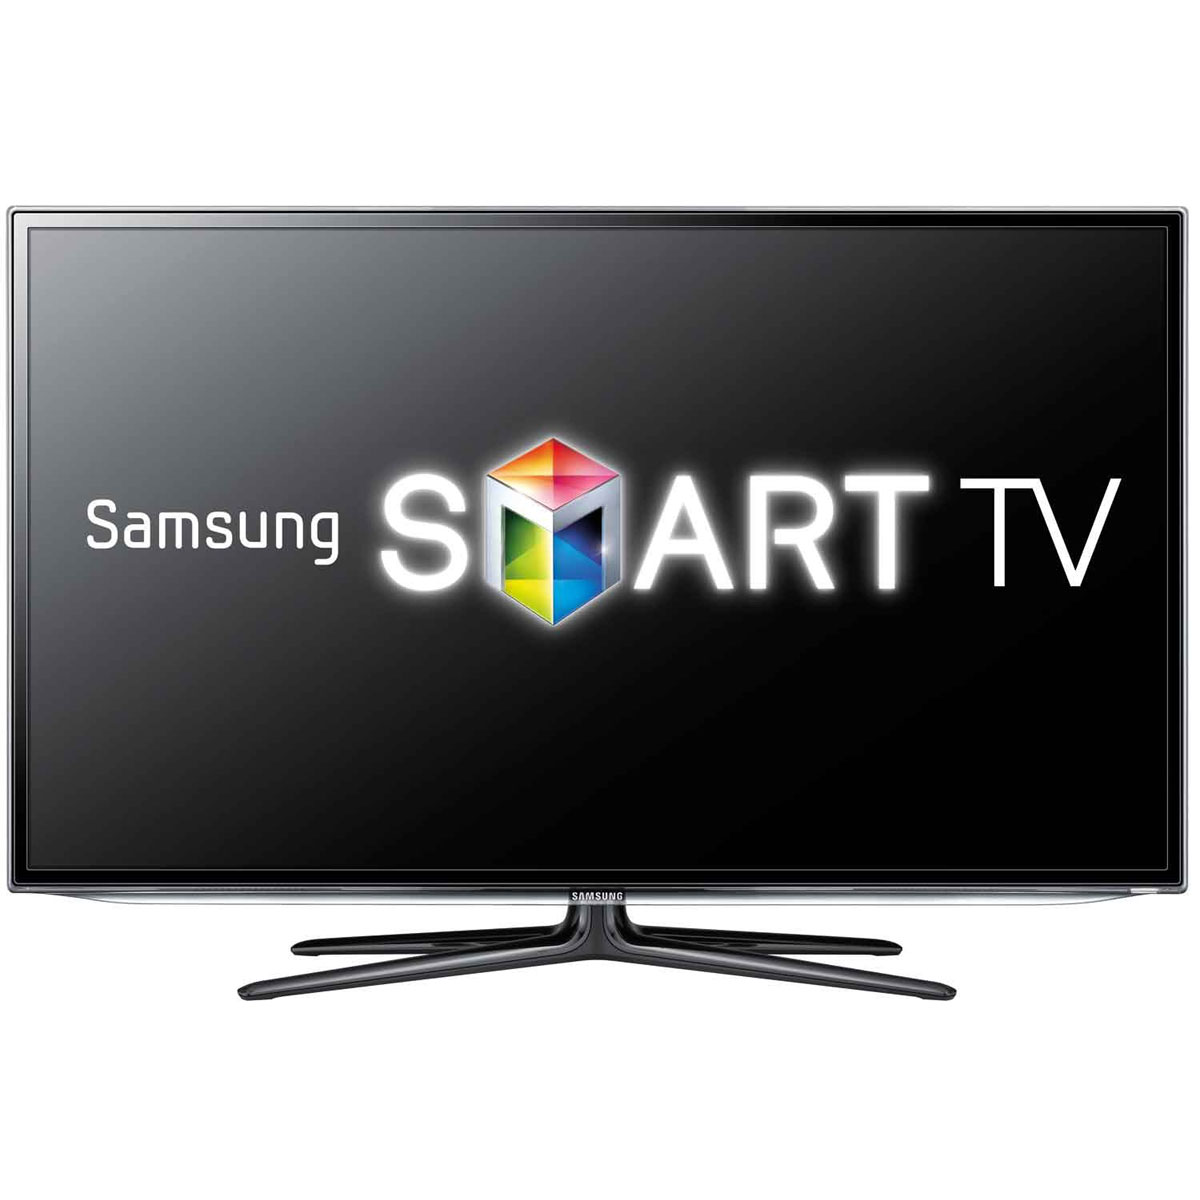 samsung smart tv share